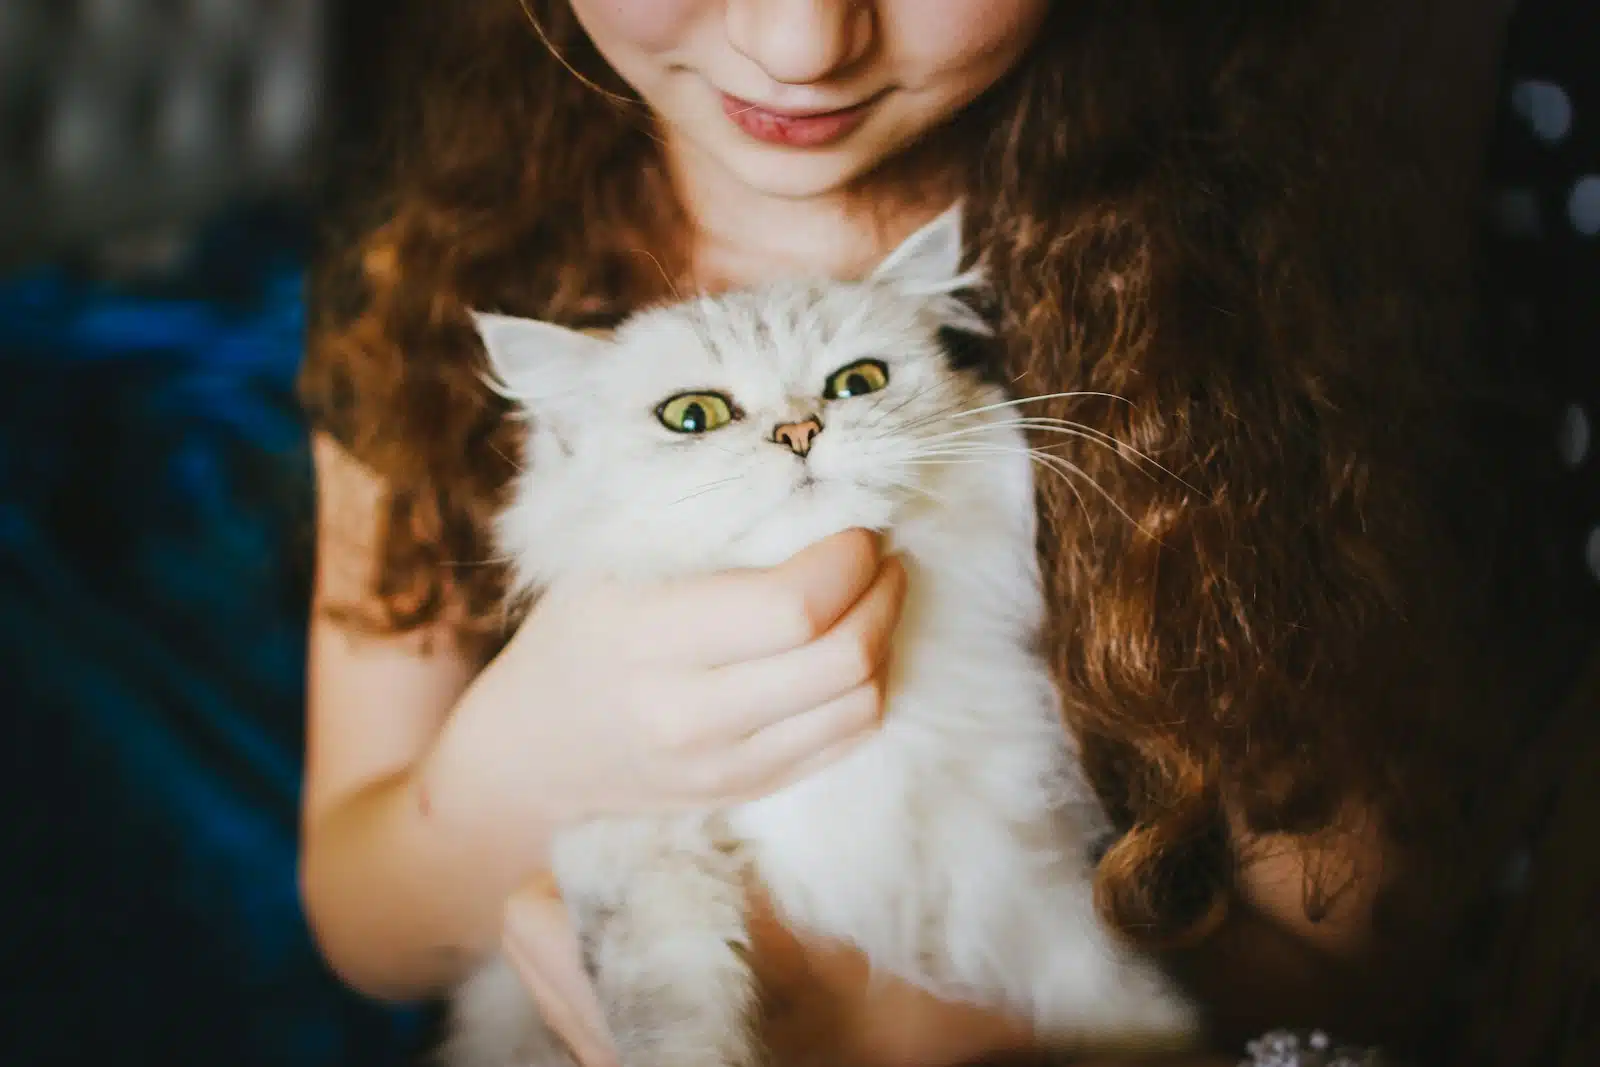 une petite fille avec un chat dans les bras